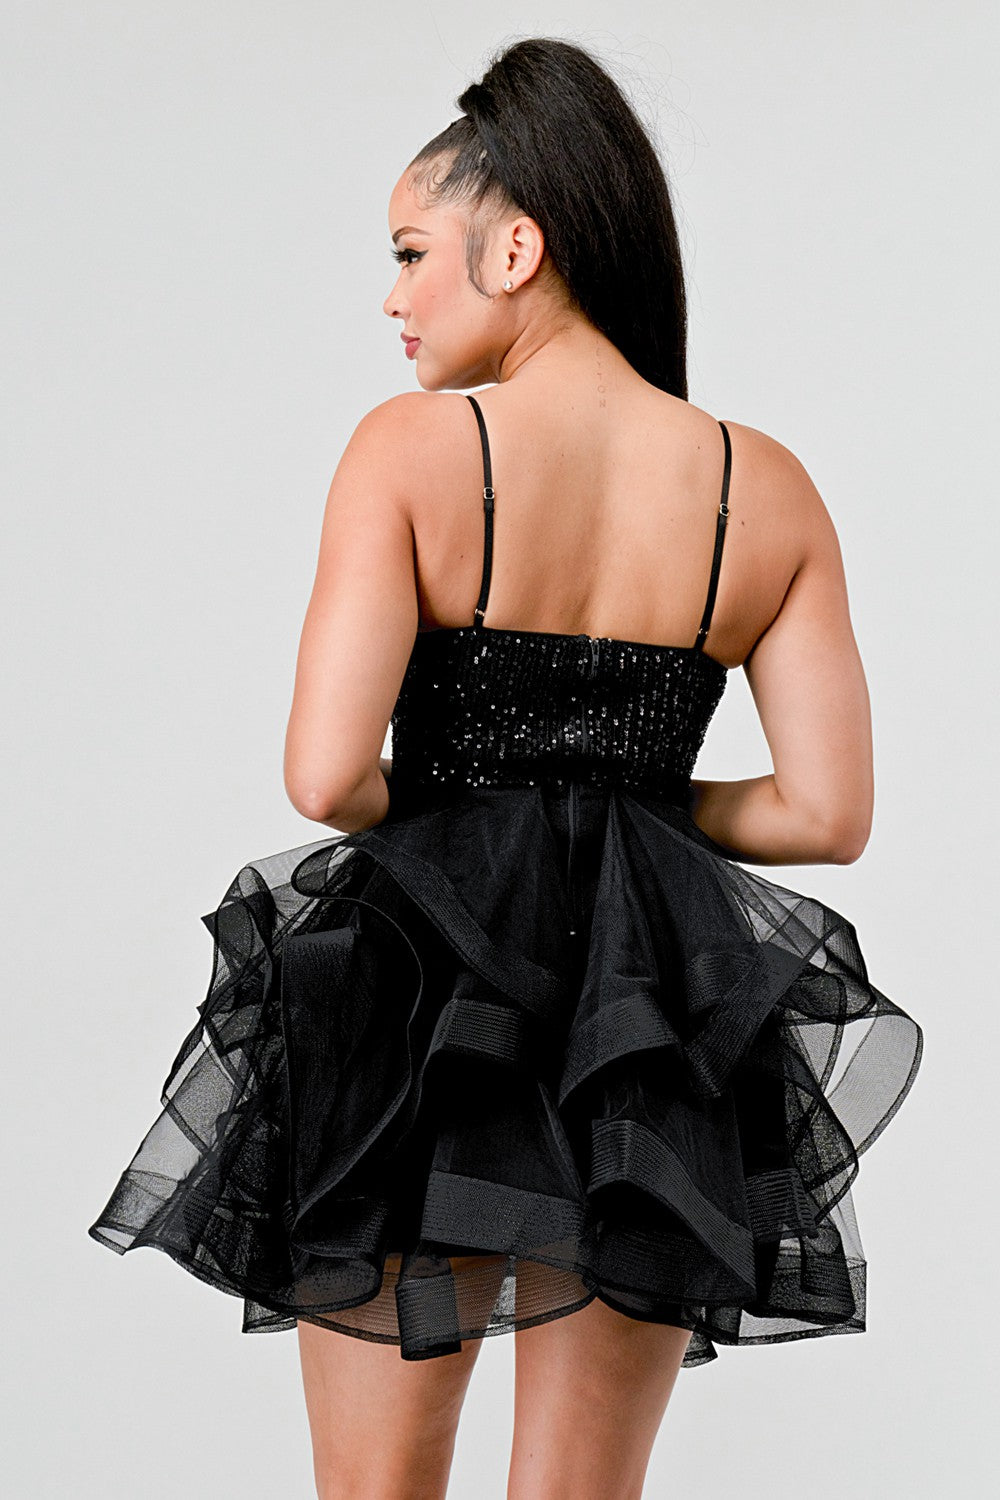 "Diva Mode" Black Sequins Sweet Heart Tulle Dress